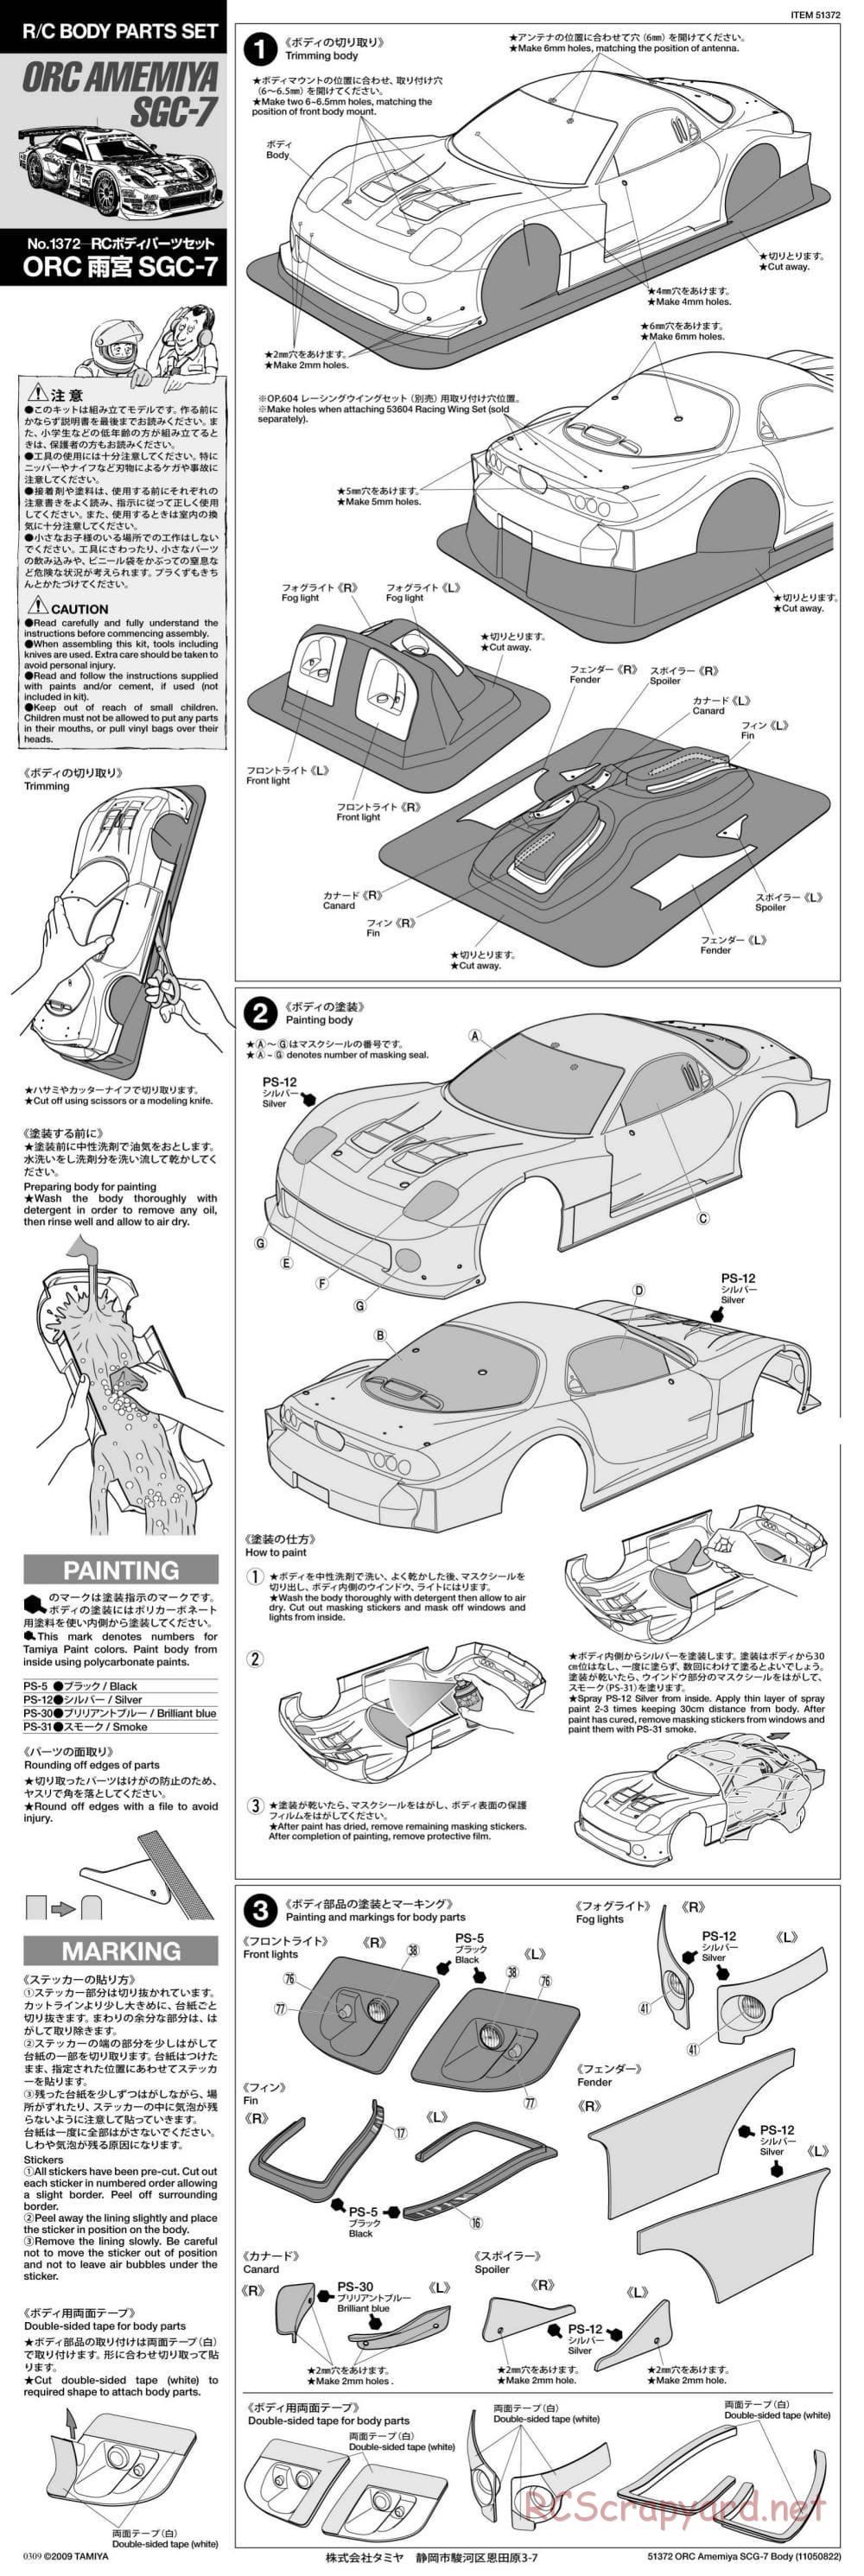 Tamiya - ORC Amemiya SGC-7 - TB-03 Chassis - Body Manual - Page 1